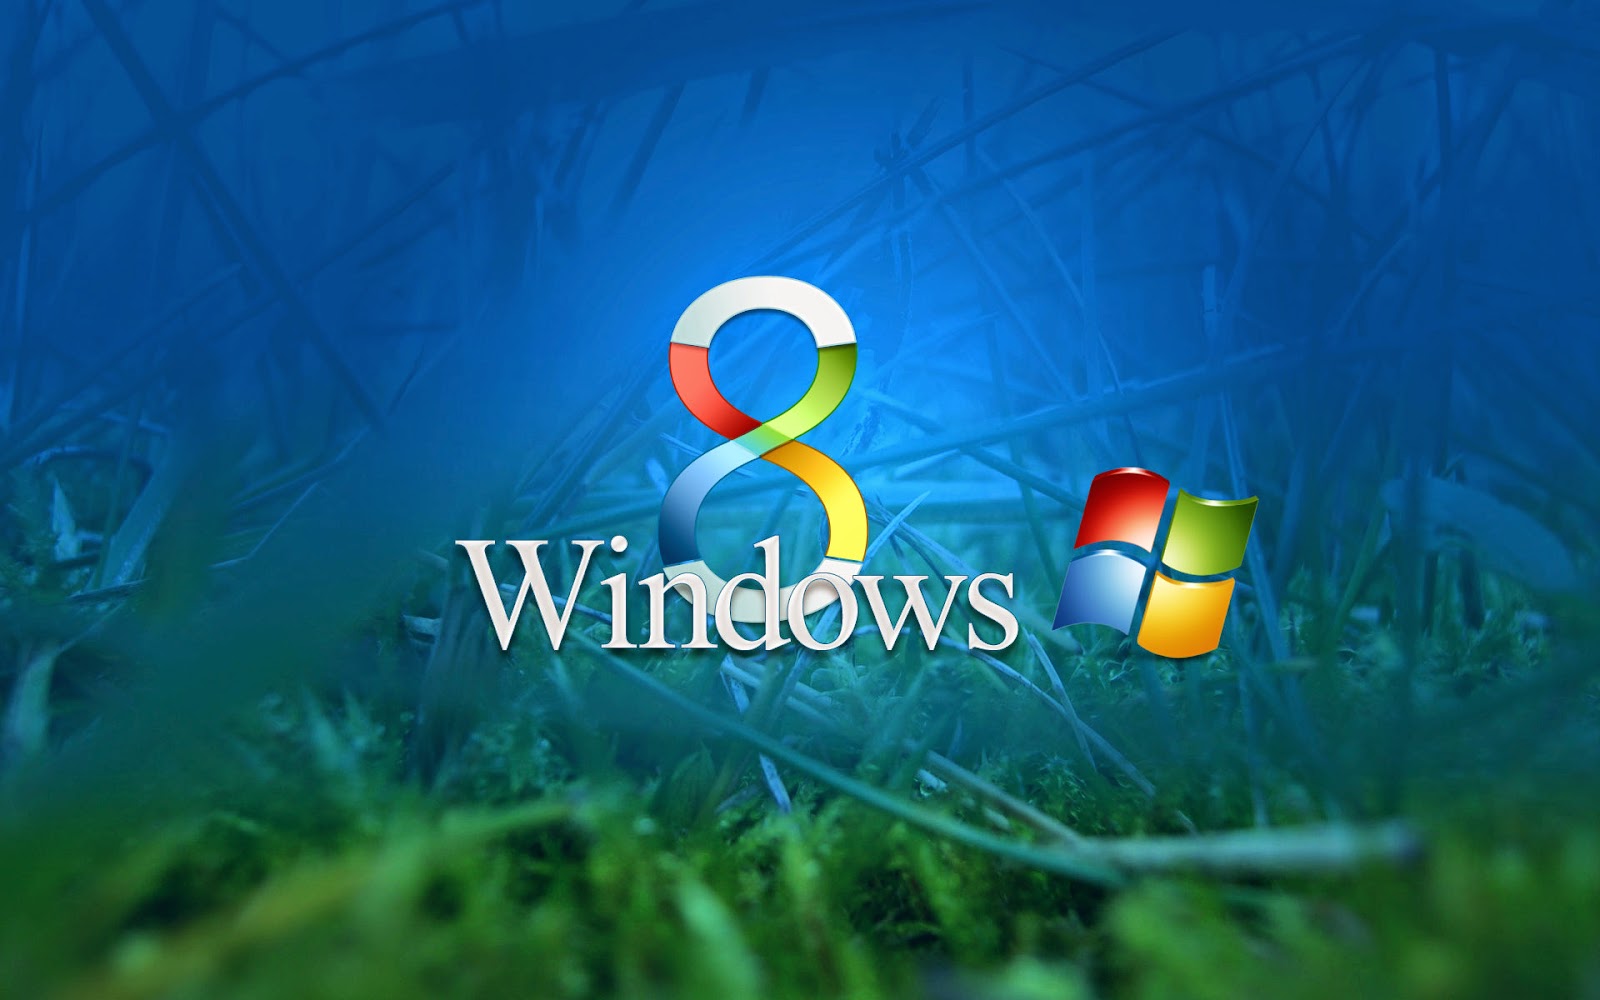 Lock Screen In Window - Windows 8 - HD Wallpaper 